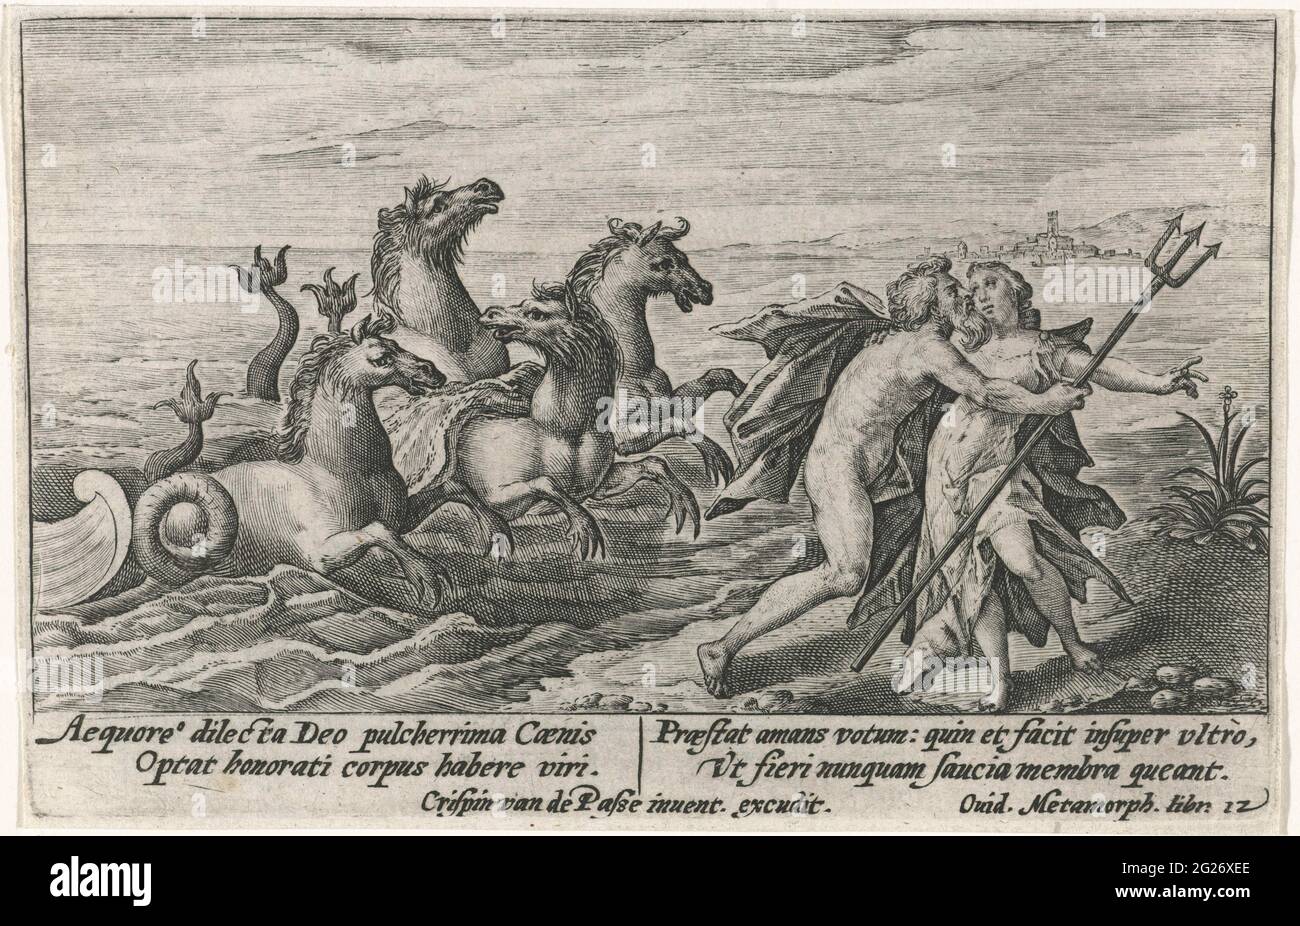 Neptunus surprises Caenis; Metamorphoses from Ovid. The Virgin Caenis